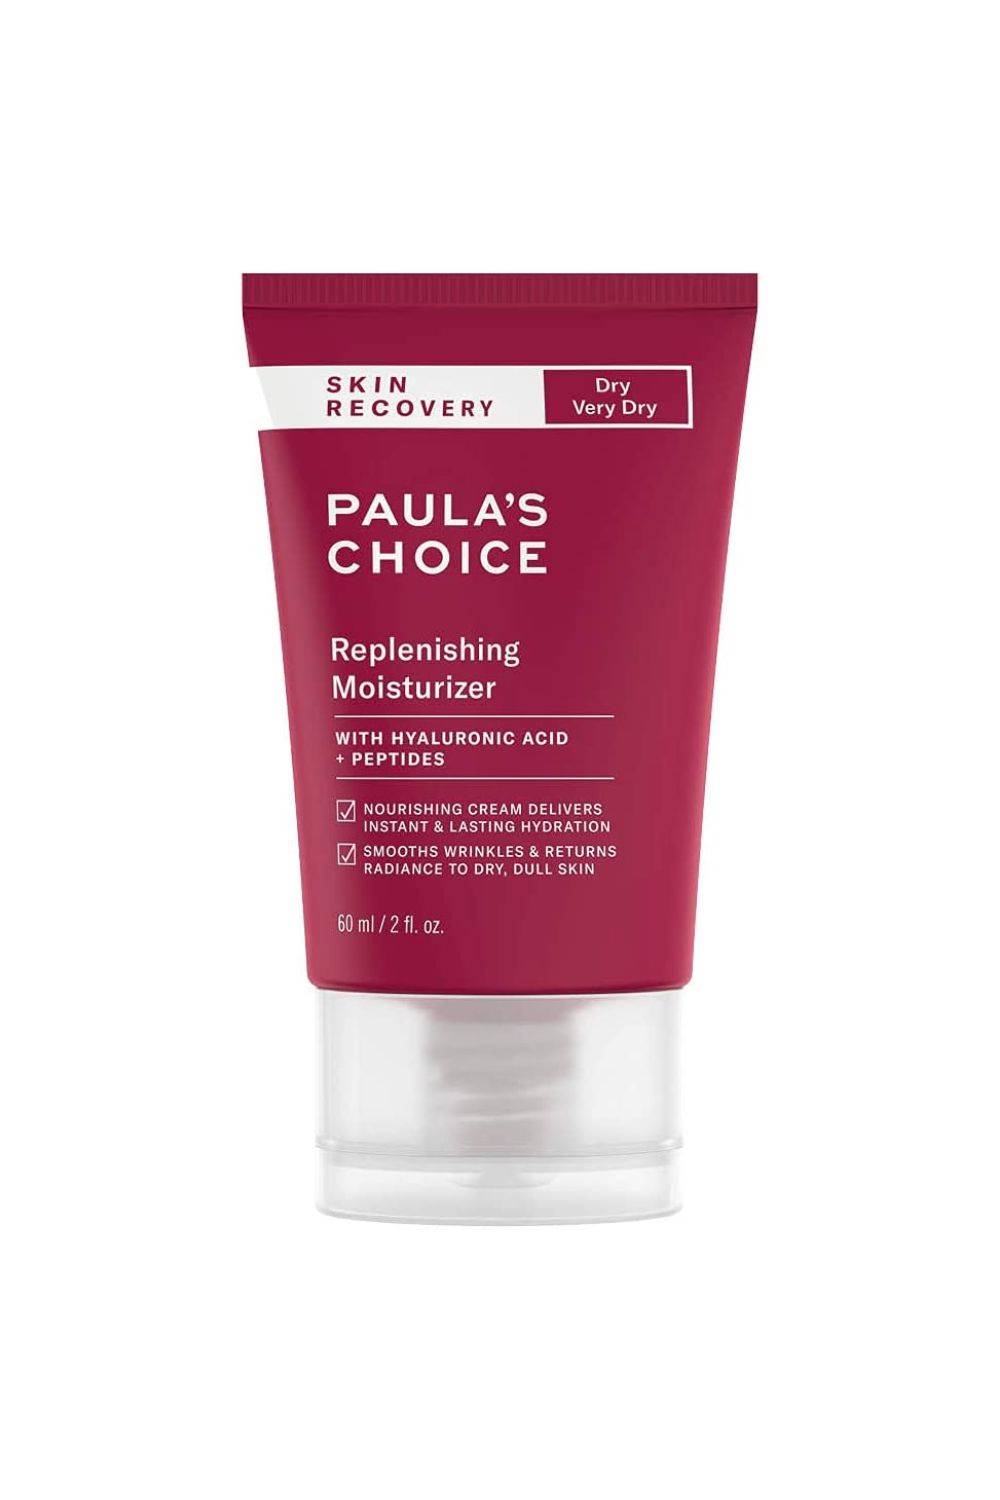 Paula's Choice Skin Recovery Crema Hidratante Facial - Crema de Noche Hidrata y Calma Pieles Sensibles - con Ácido Hialurónico & Antioxidantes - Pieles Normales a Secas 